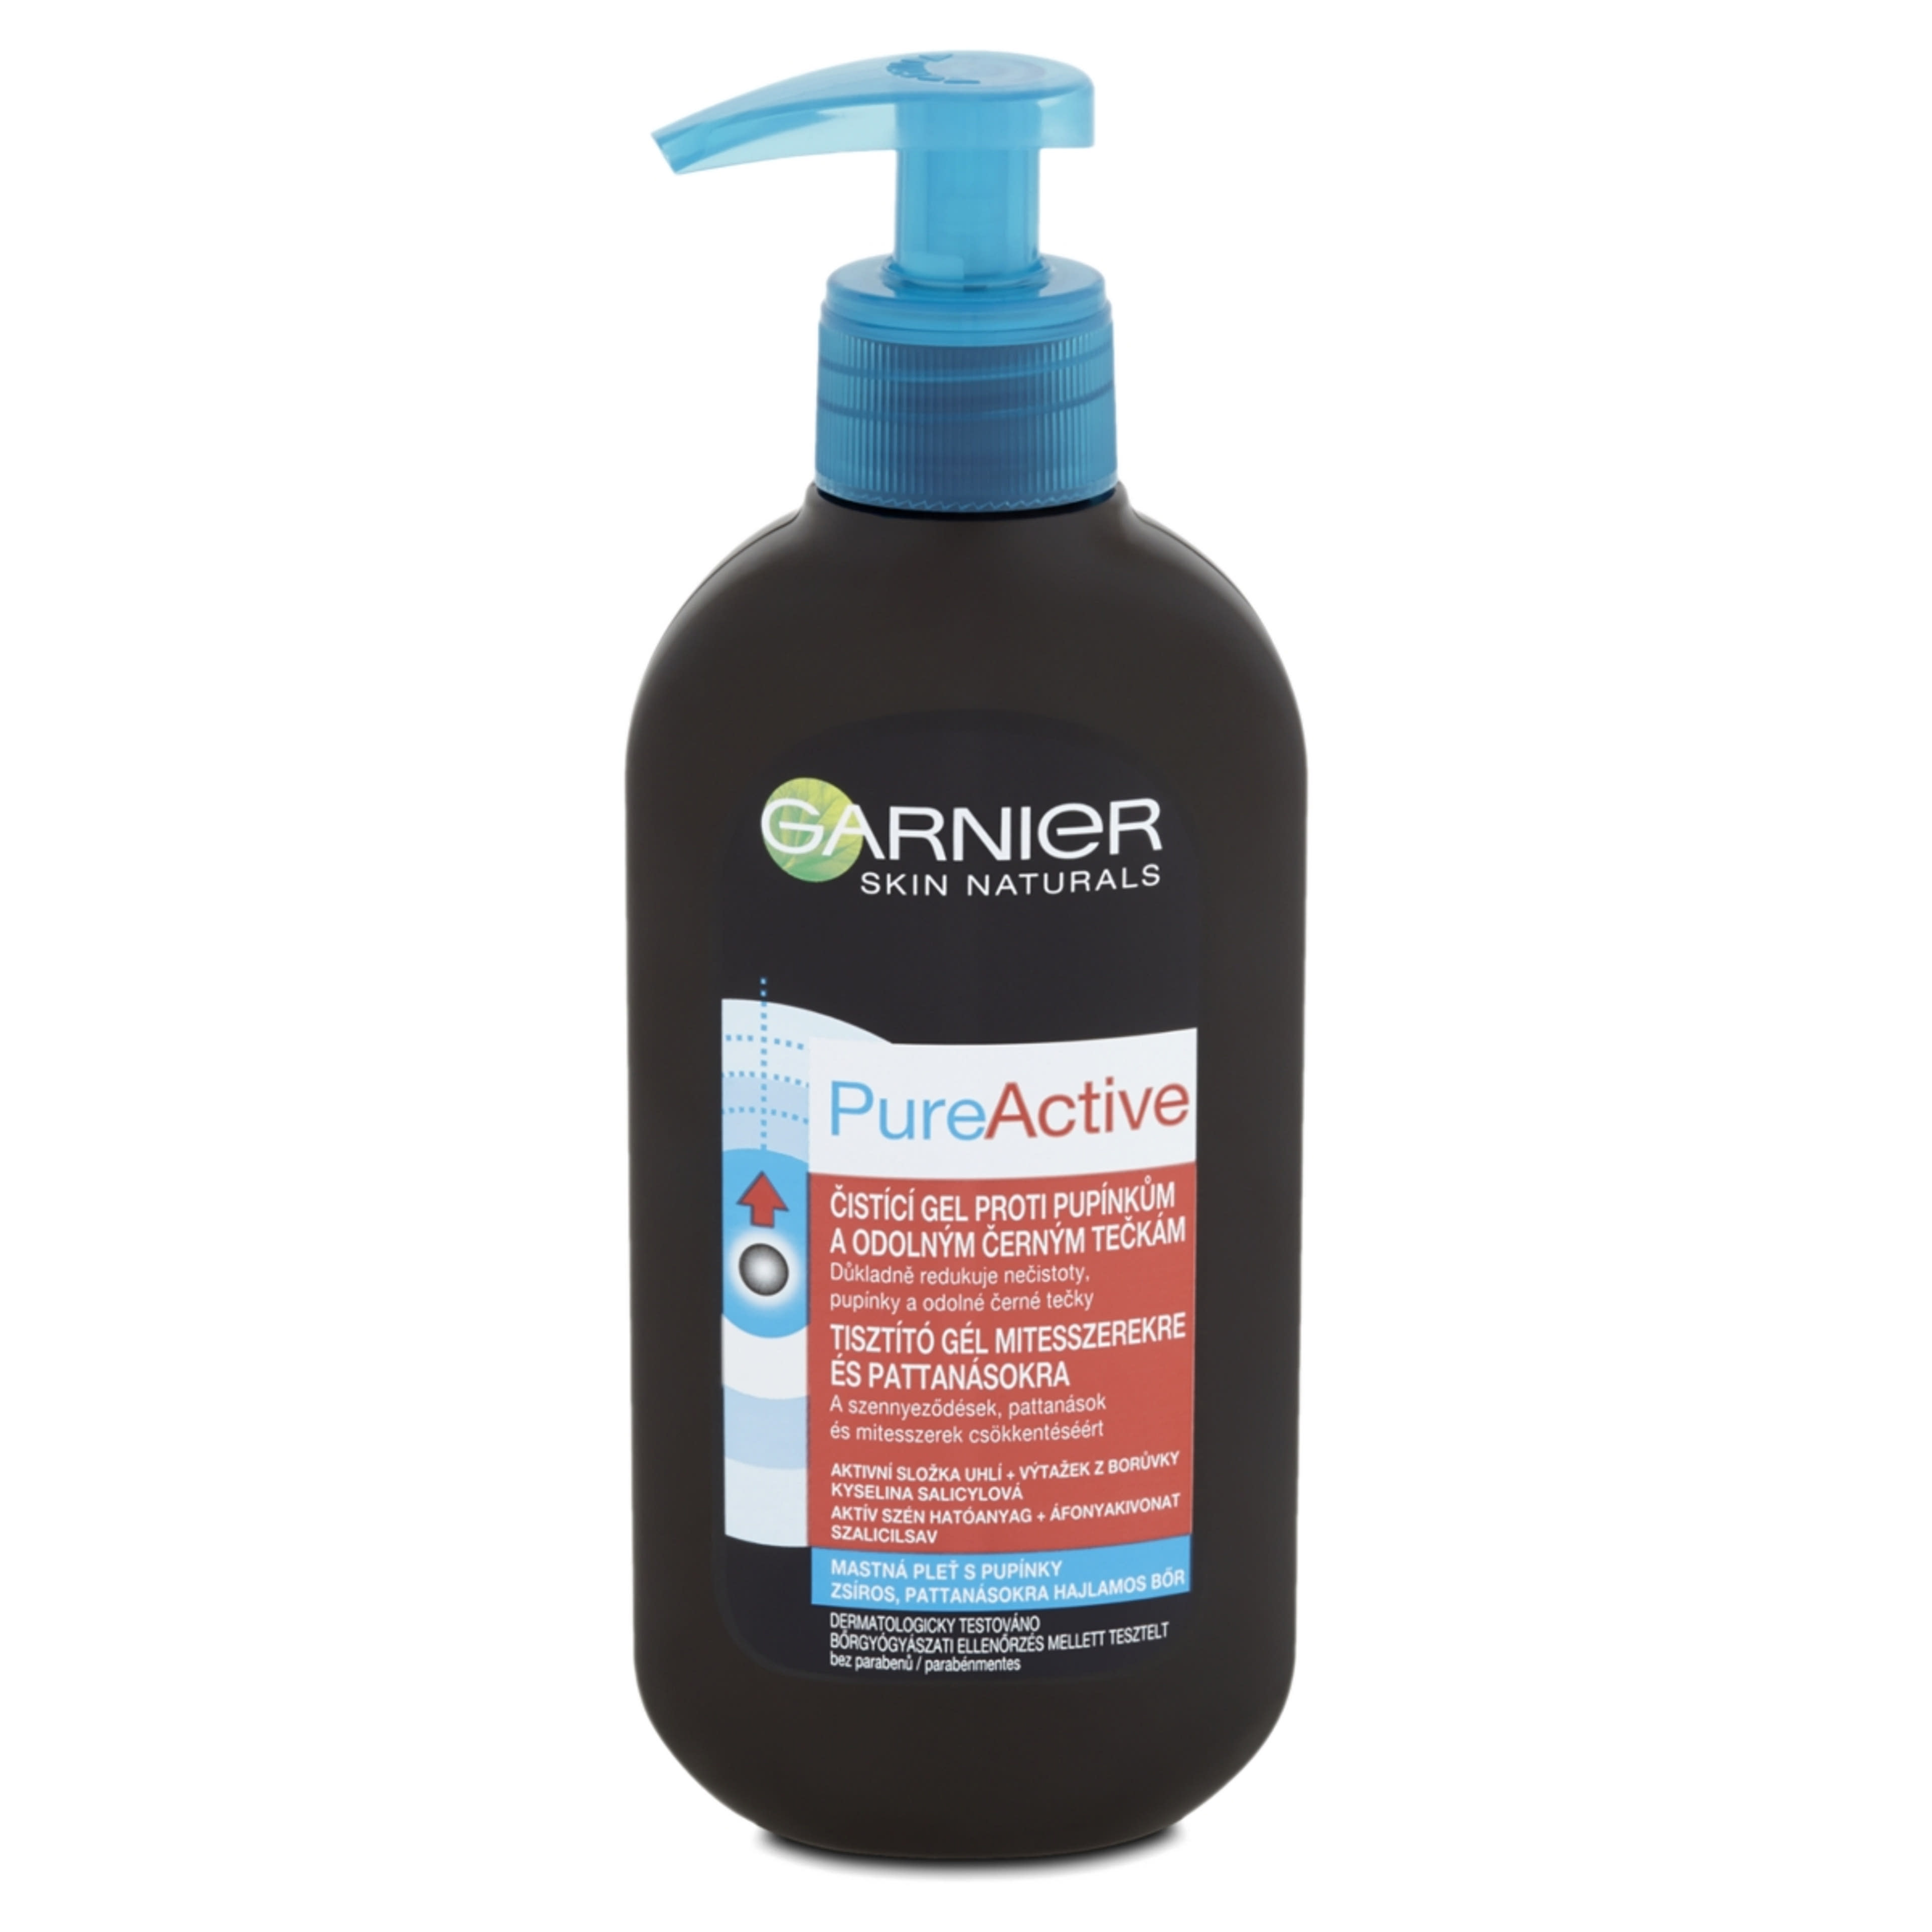 Garnier Skin Naturals Pure Active Tisztító Gél Mitesszerekre És Pattanásokra - 200 ml-1